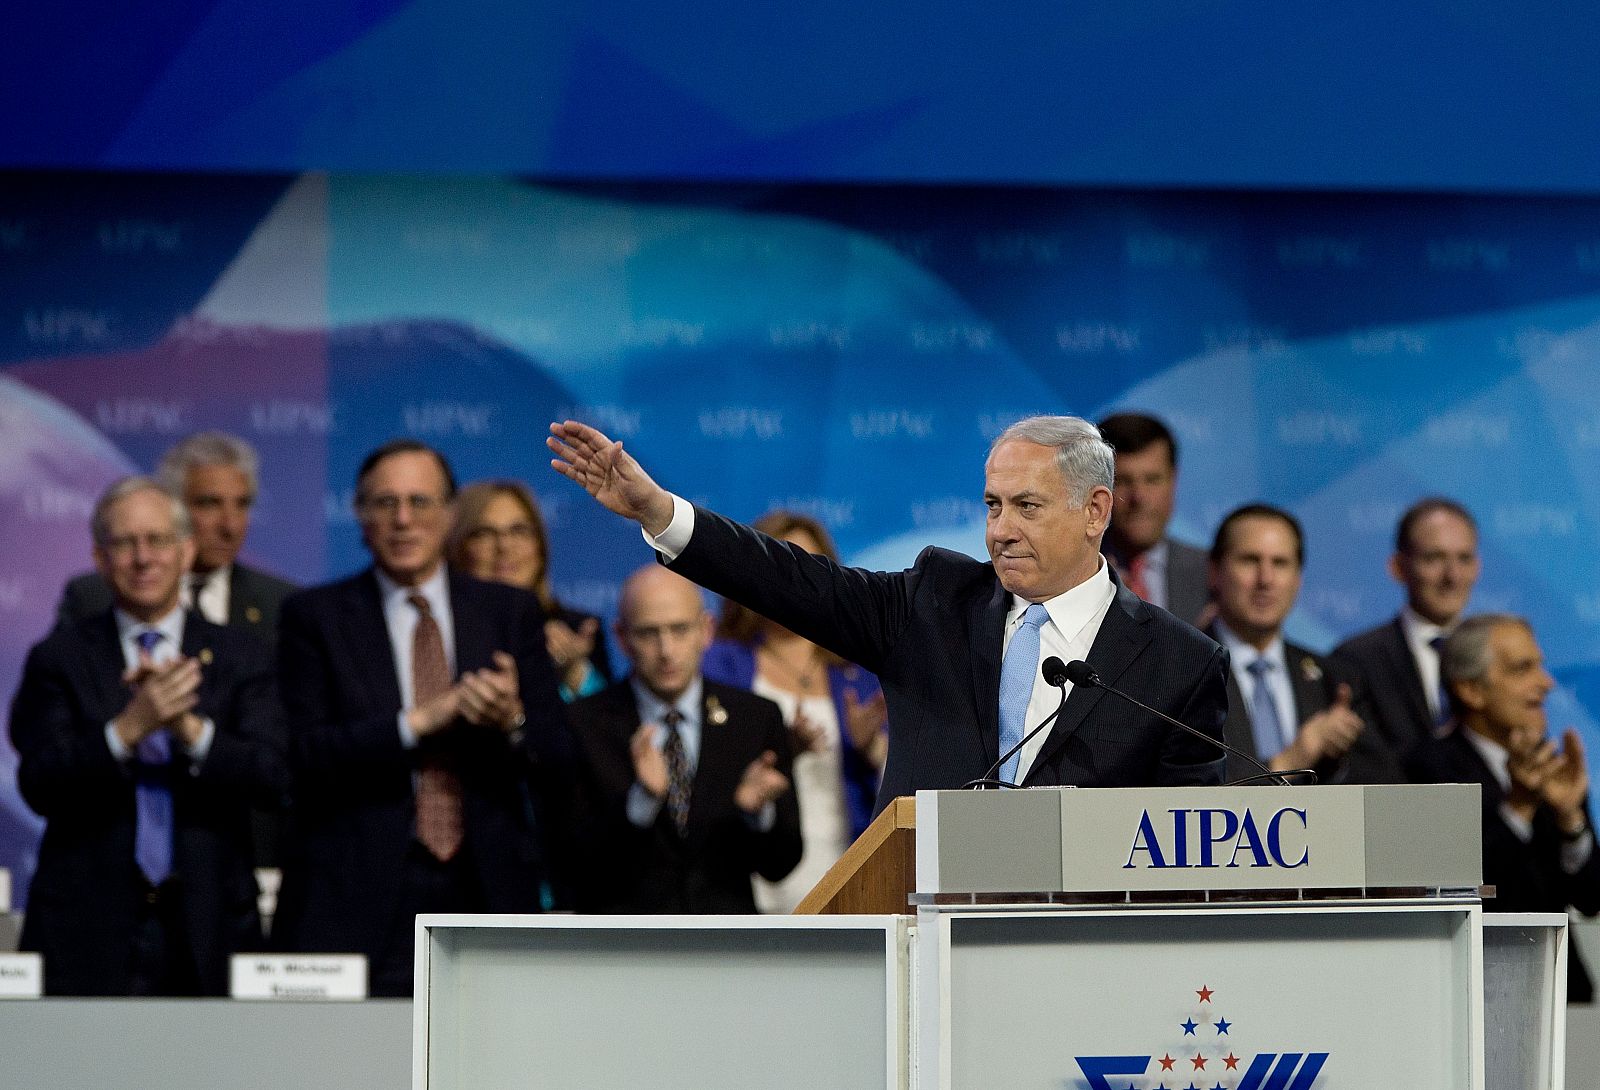 Netanyahu saluda al auditorio del grupo israelí AIPAC en su discurso este martes en Washington.